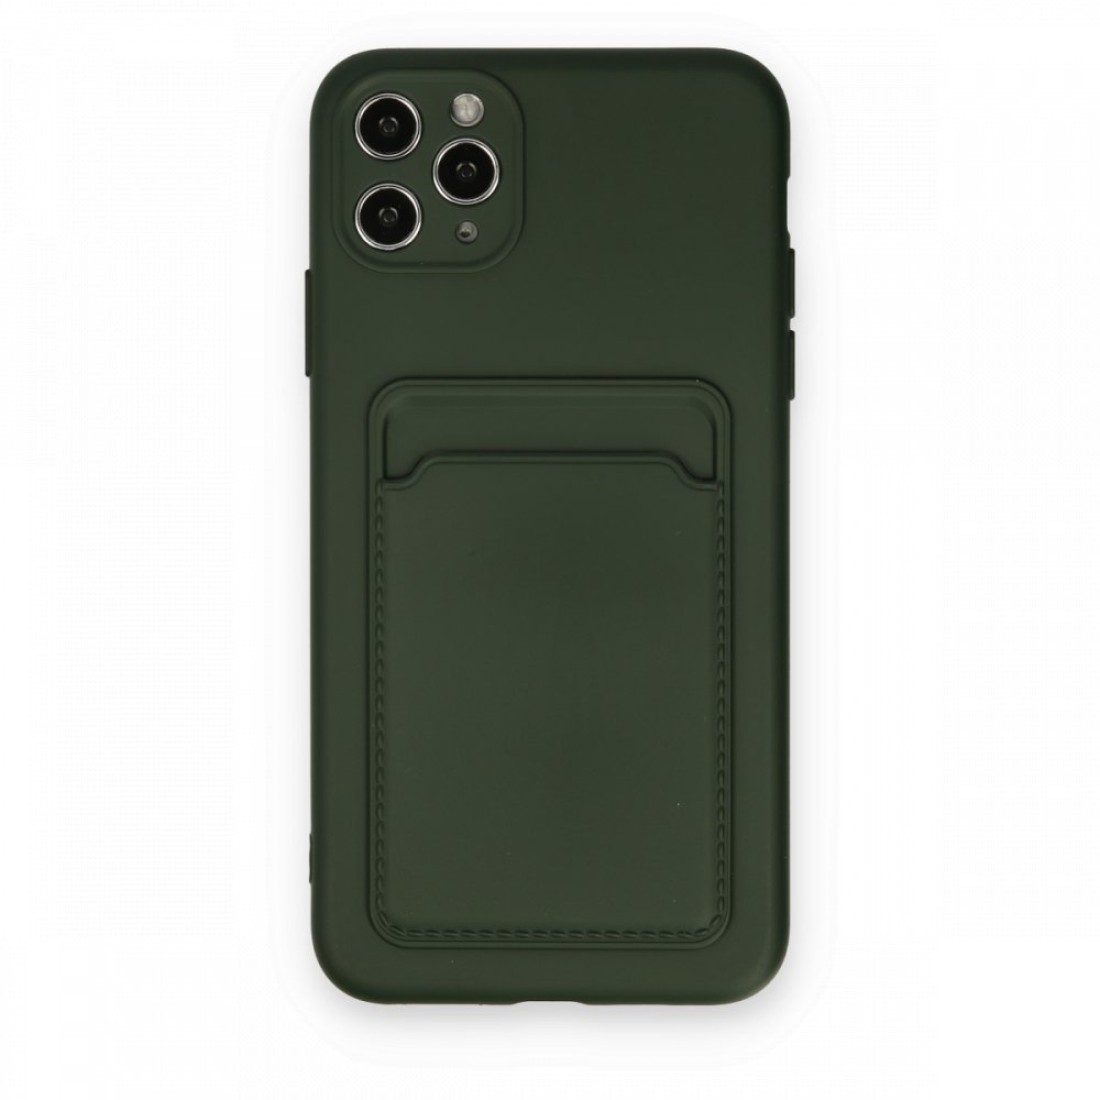 Apple iPhone 11 Pro Max Kılıf Kelvin Kartvizitli Silikon - Koyu Yeşil